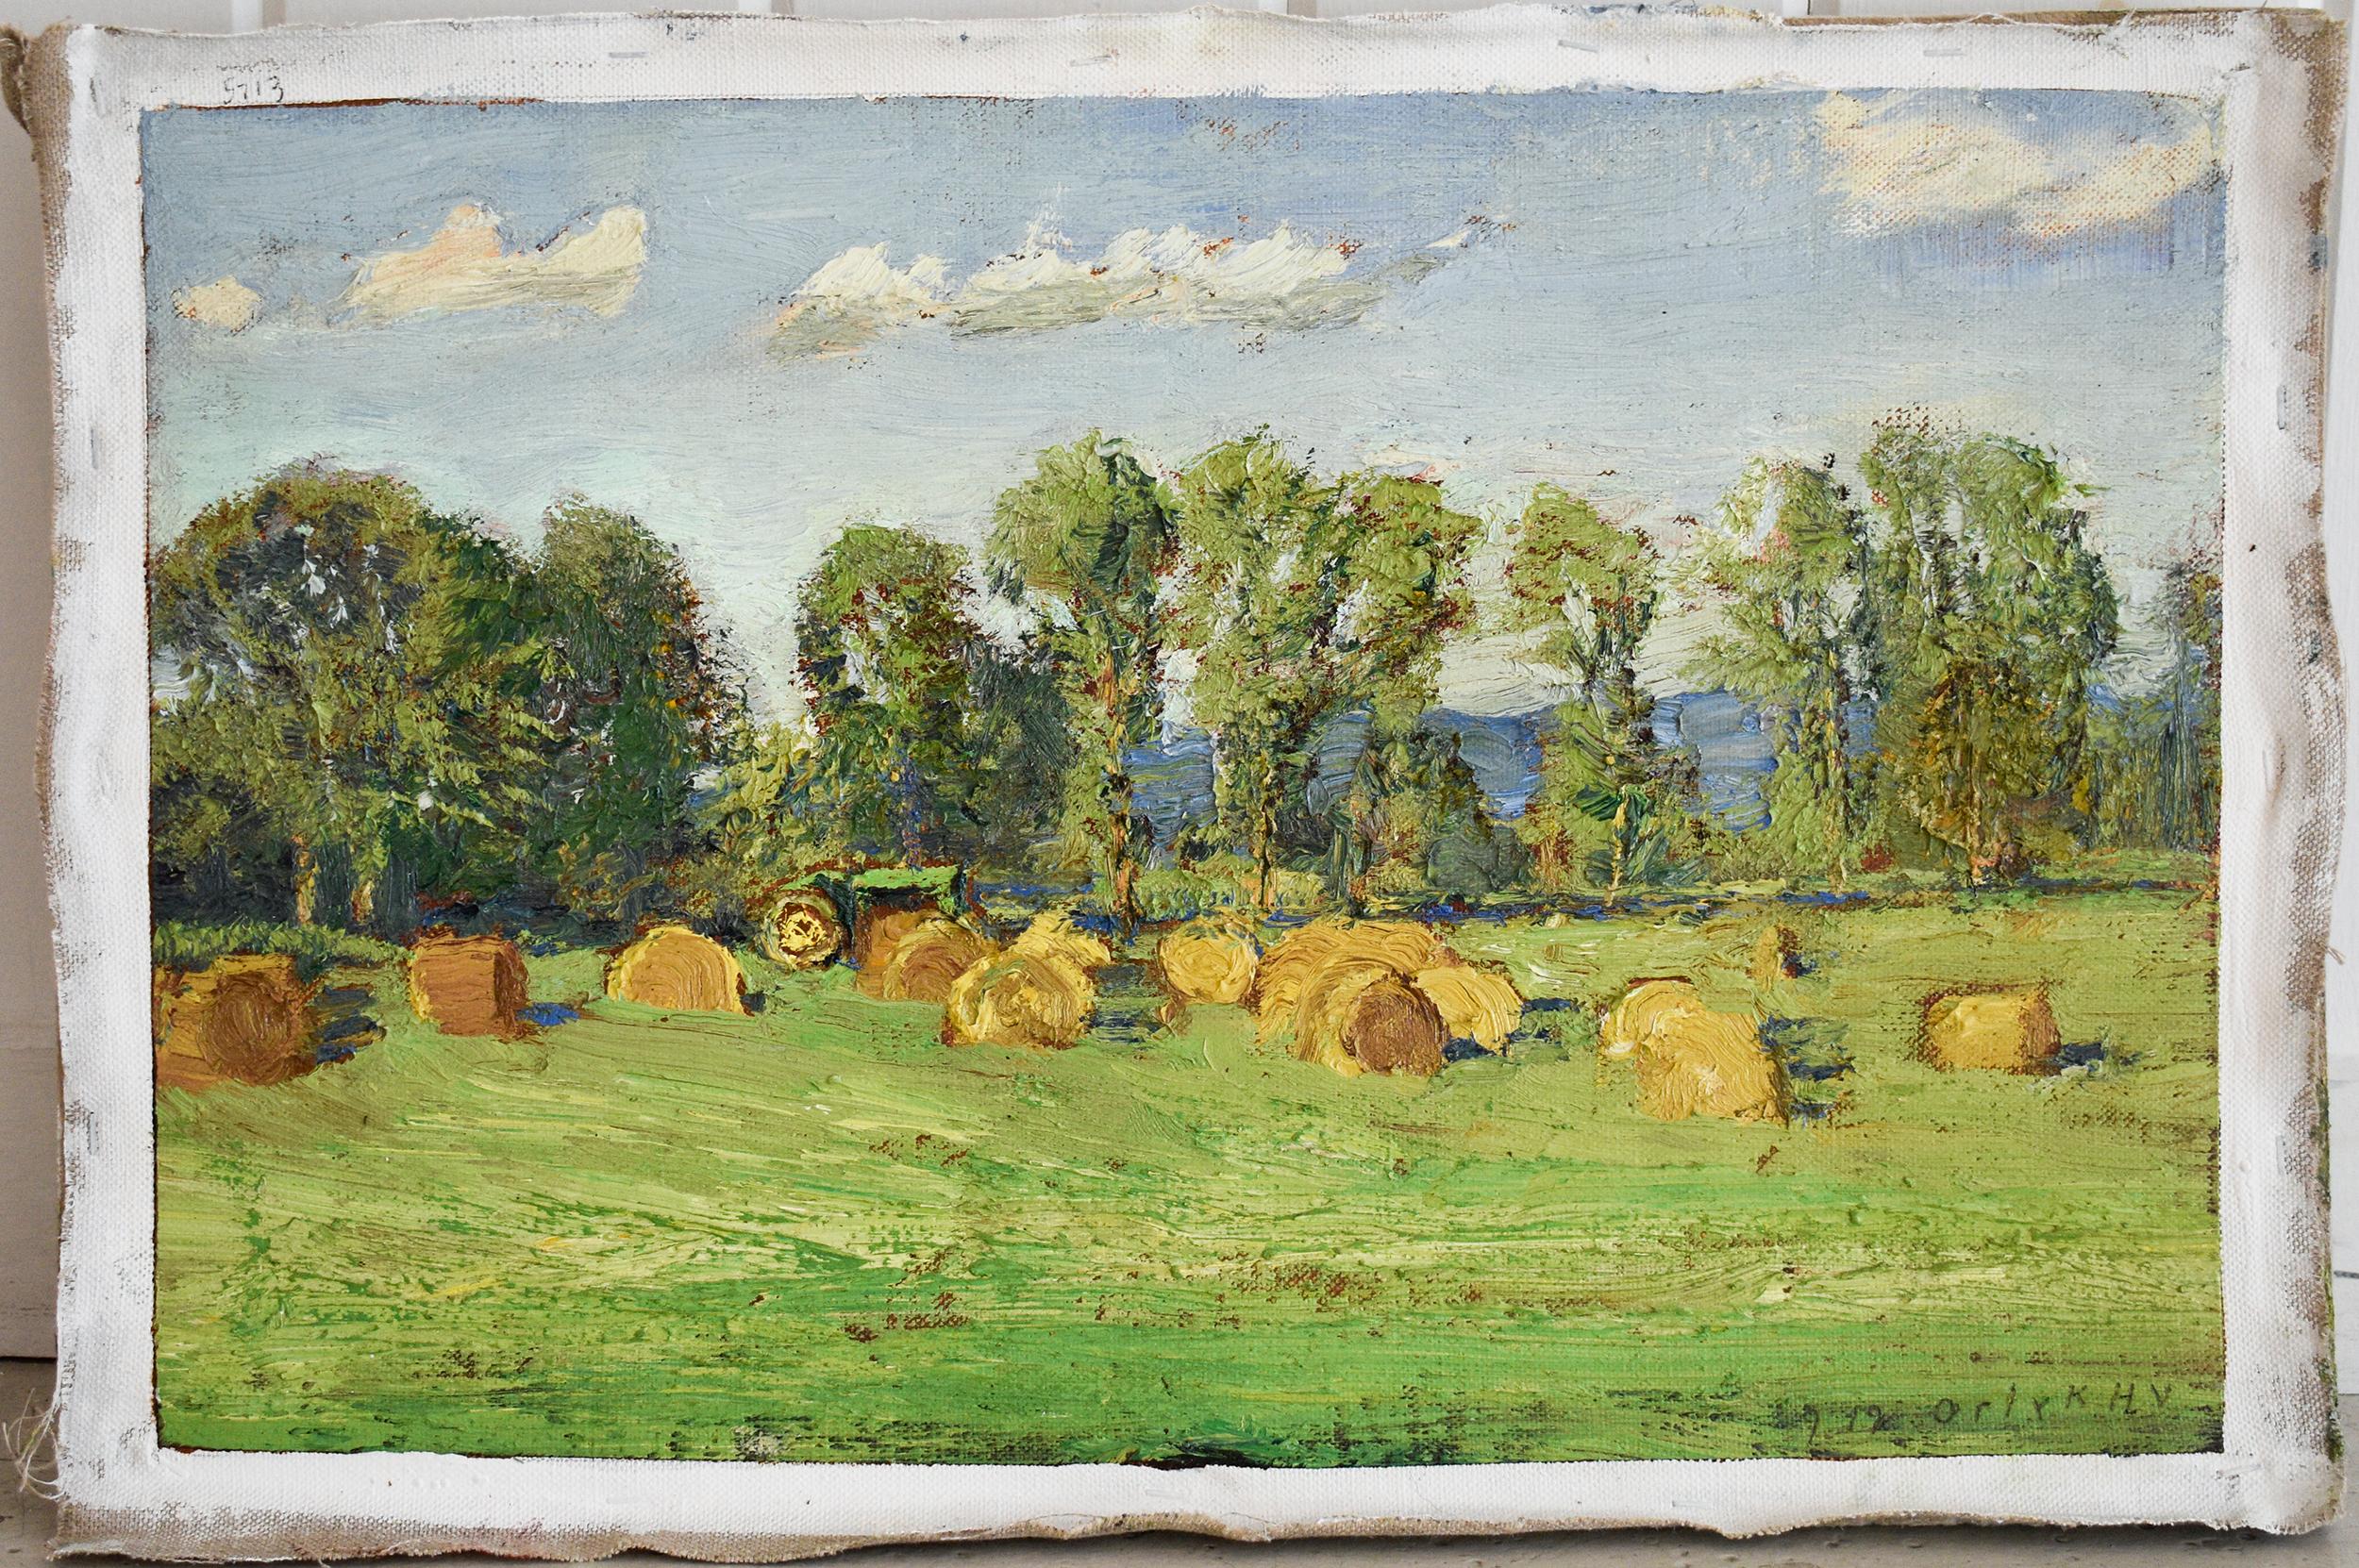 #5713 Richard Neil's Field: Impressionistic En Plein Air Landscape Painting  1